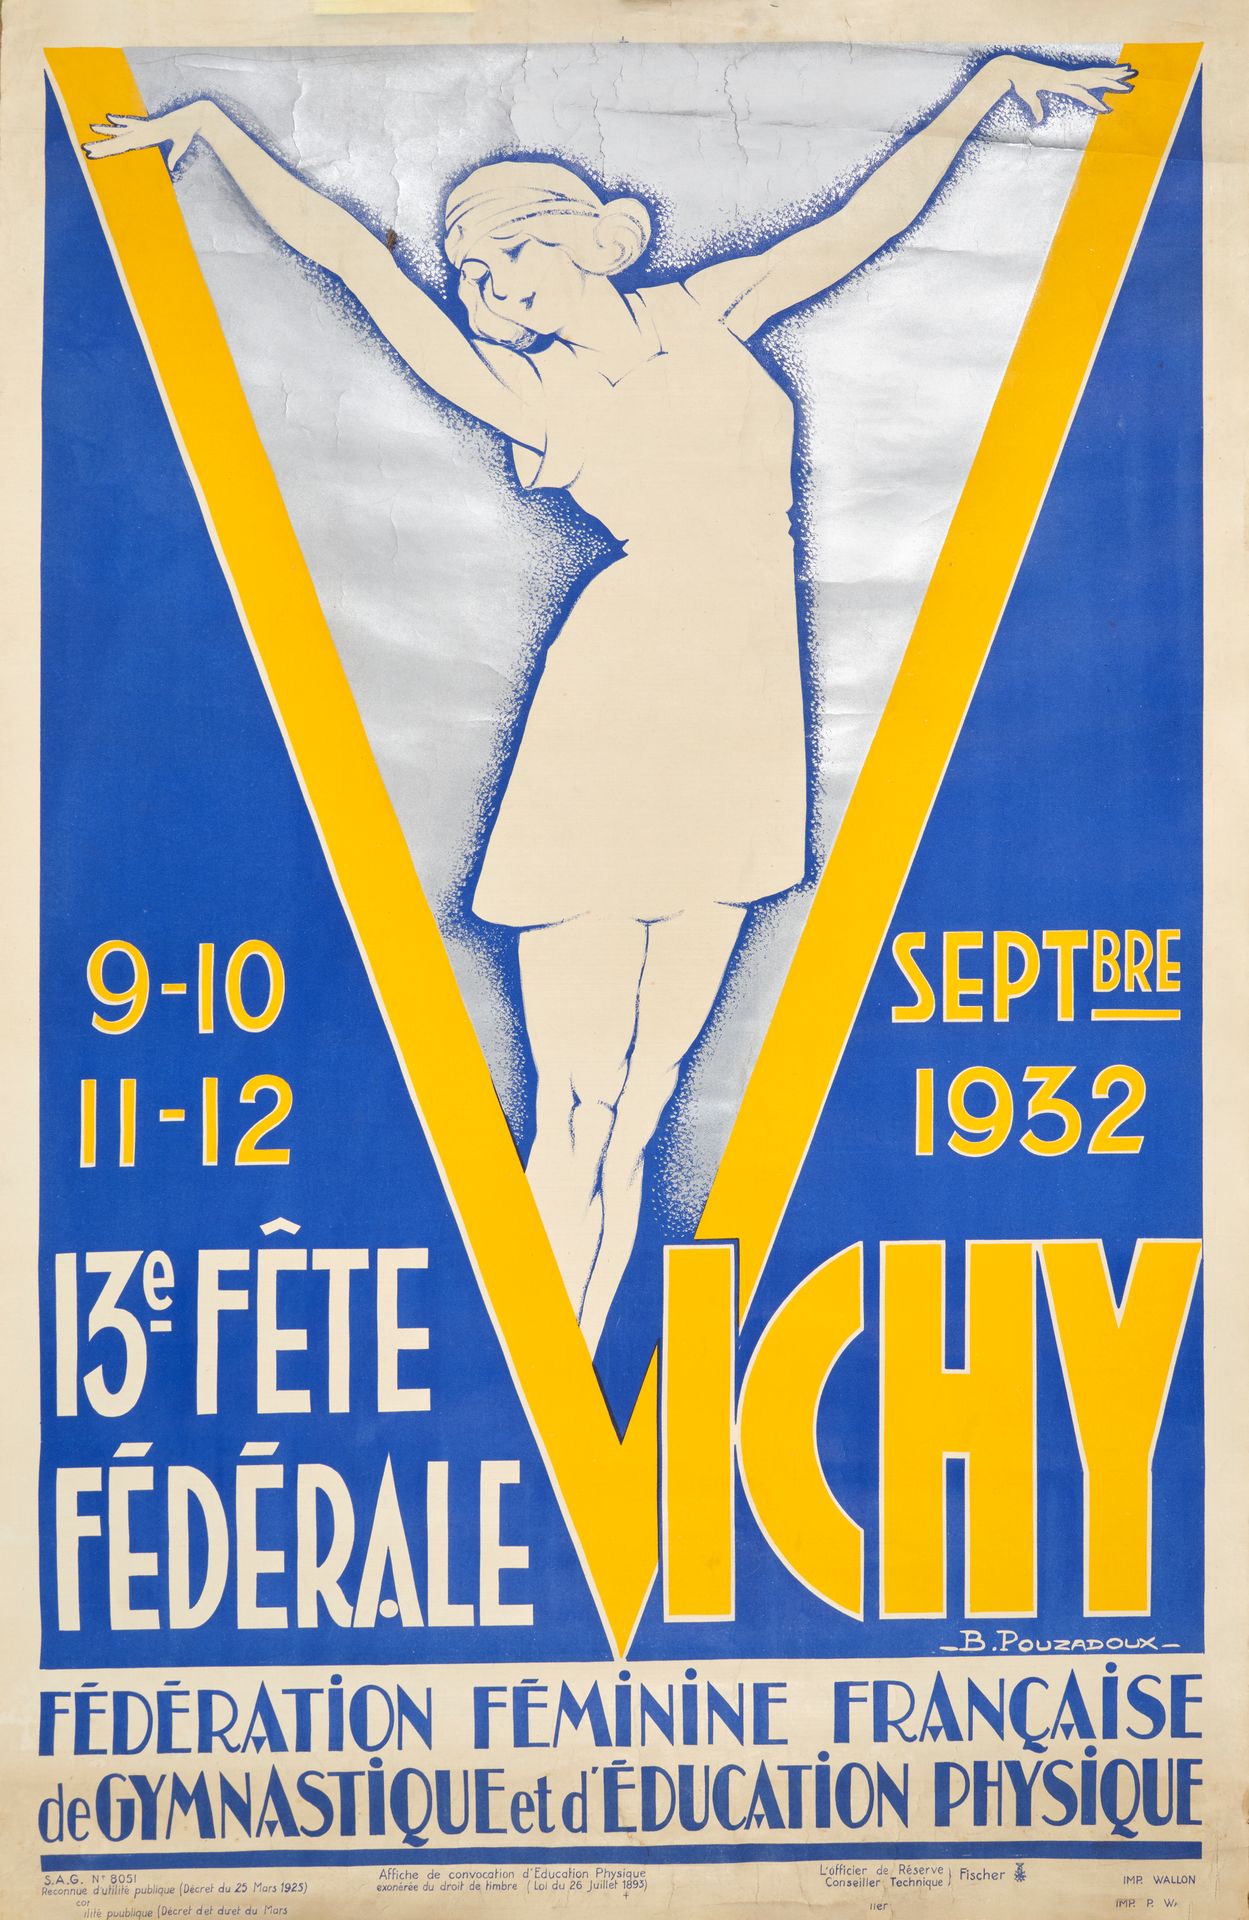 Null B POUZADOUX（20 世纪）
维希第 13 届联邦体操节 1932 年 9 月
瓦隆小恶魔
无画布海报，保存完好
98 x 65 厘米